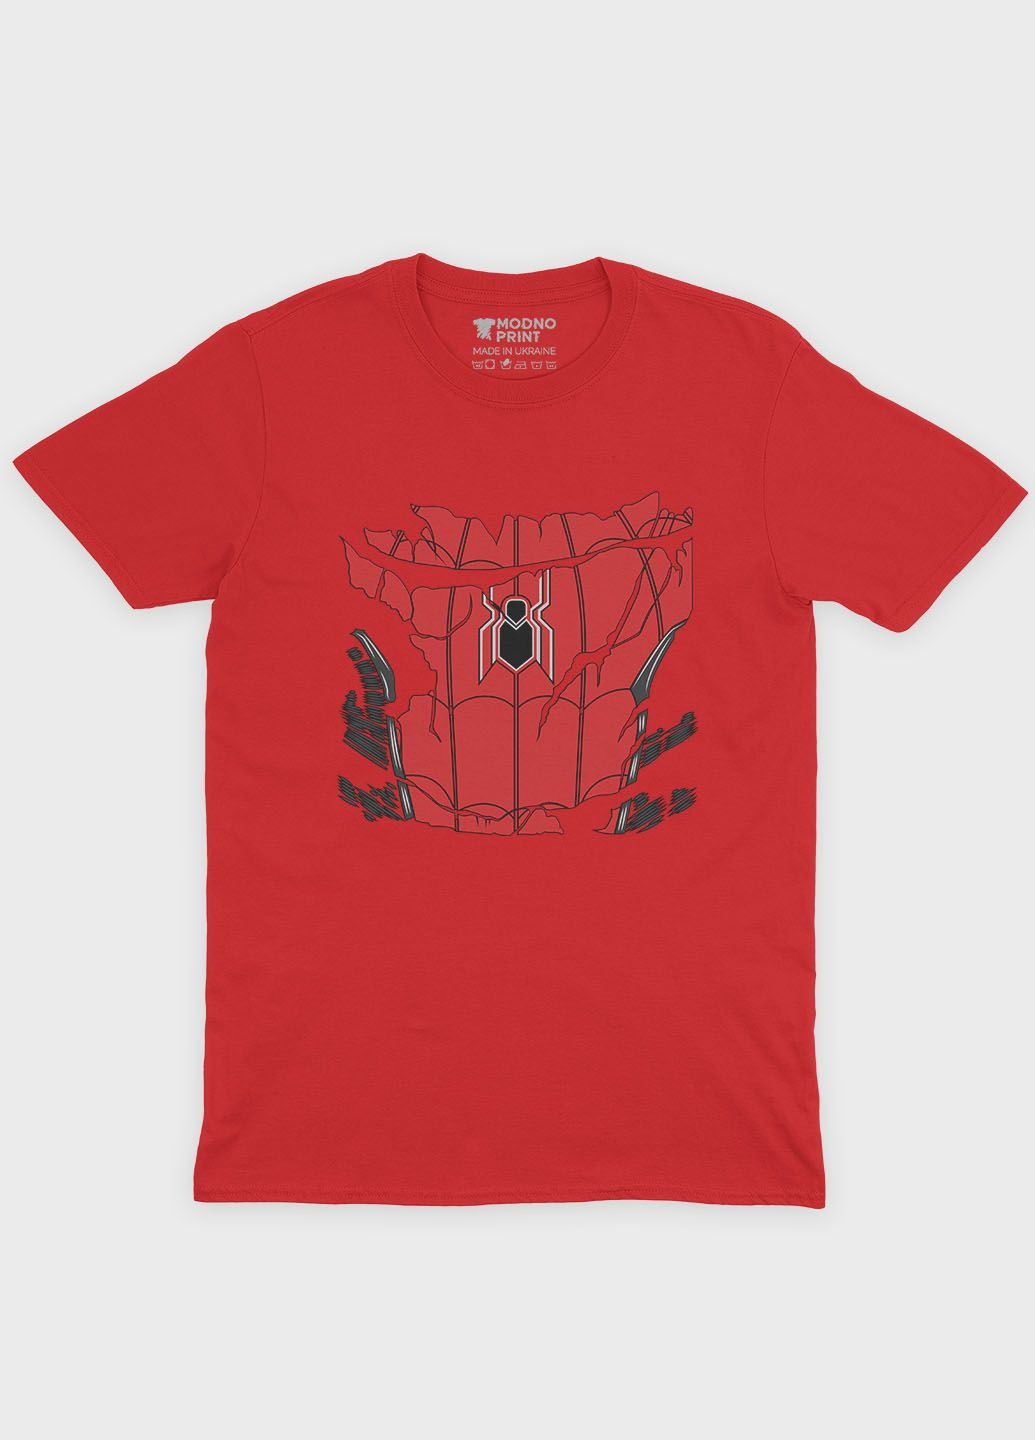 Красная демисезонная футболка для мальчика с принтом супергероя - человек-паук (ts001-1-sre-006-014-090-b) Modno